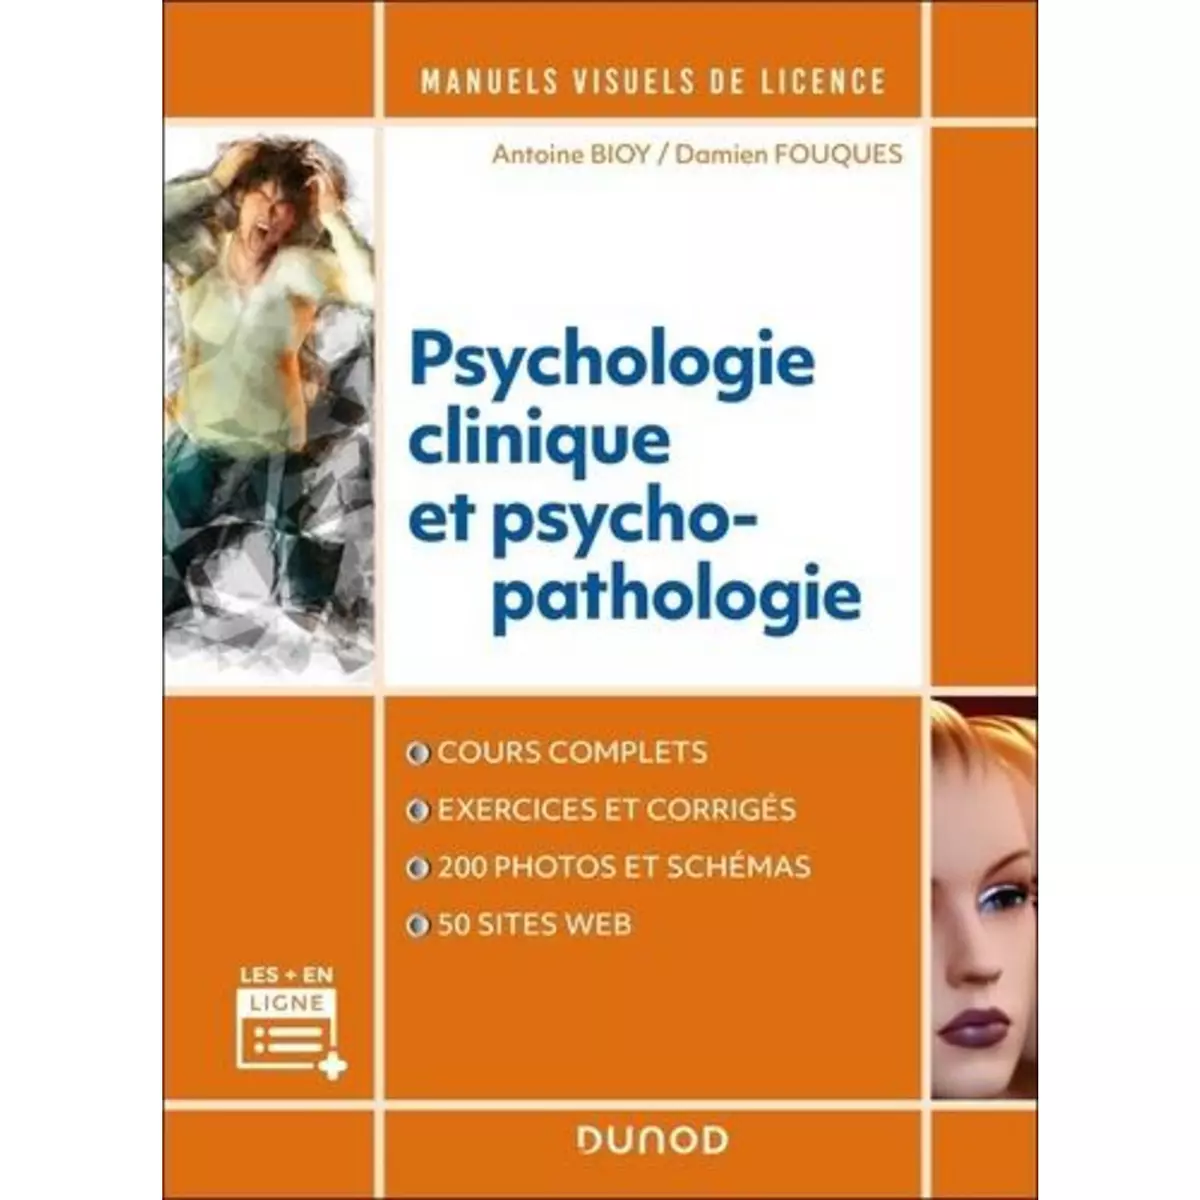  MANUEL VISUEL DE PSYCHOLOGIE CLINIQUE ET PSYCHOPATHOLOGIE, Bioy Antoine